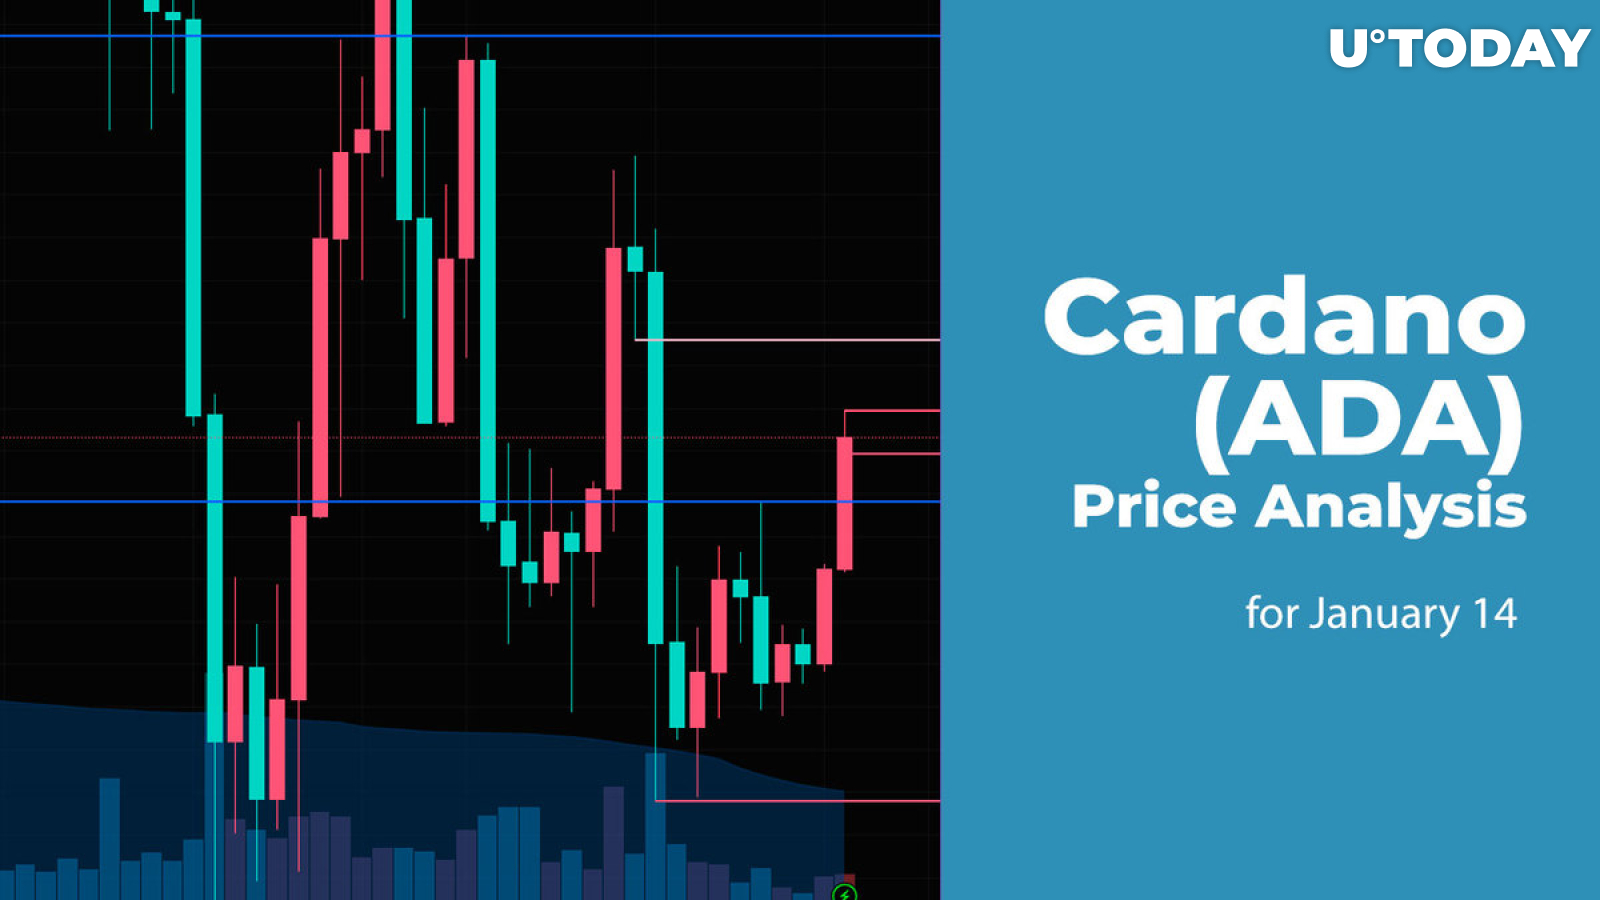 Cardano (ADA) Price Analysis for January 14